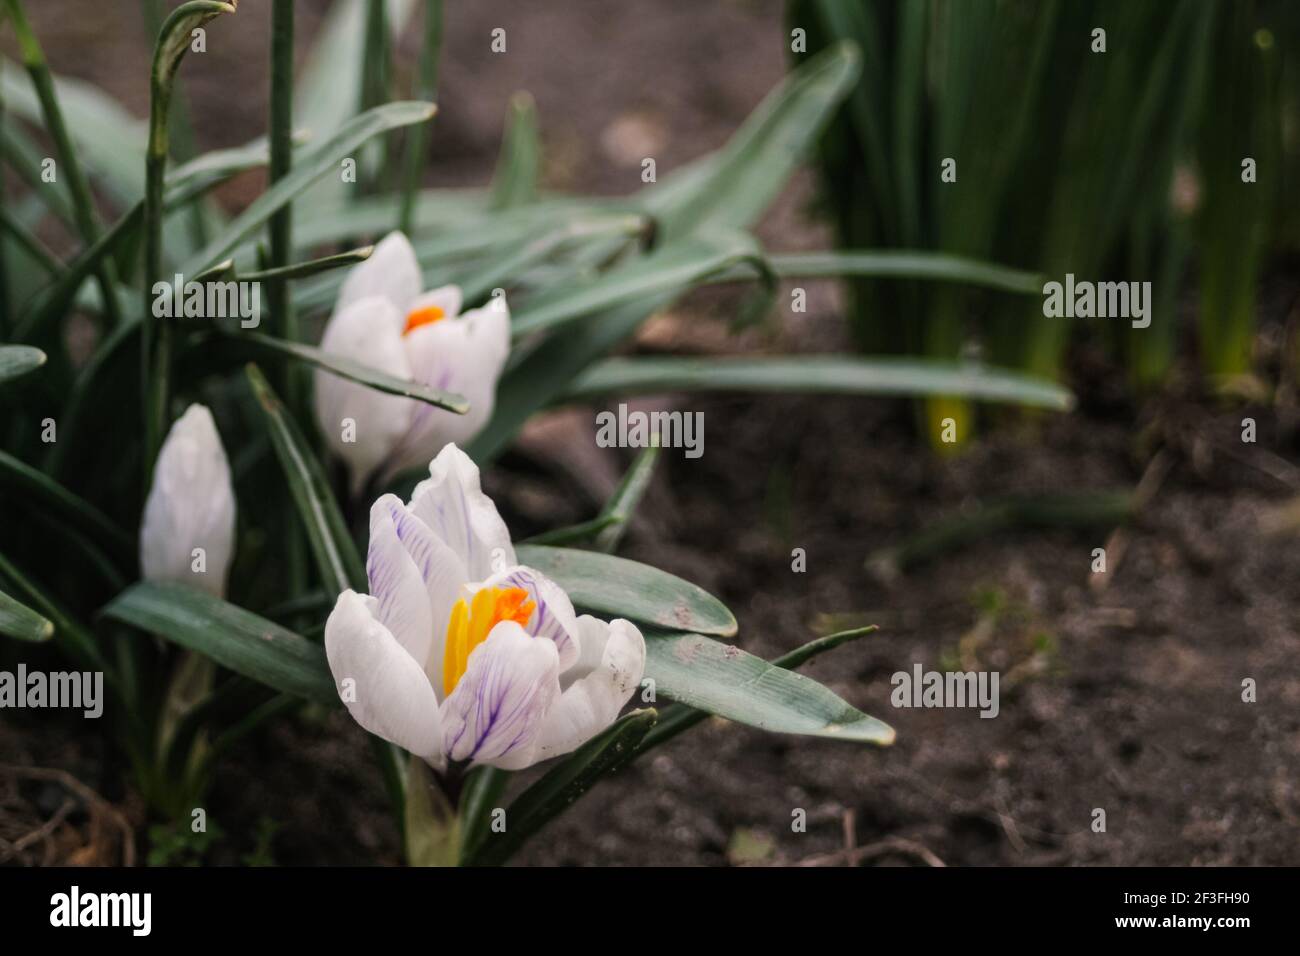 Crocus blancs, safran poussent dans le jardin au début du printemps par temps nuageux. Visible au sol. Copier l'espace à droite Banque D'Images